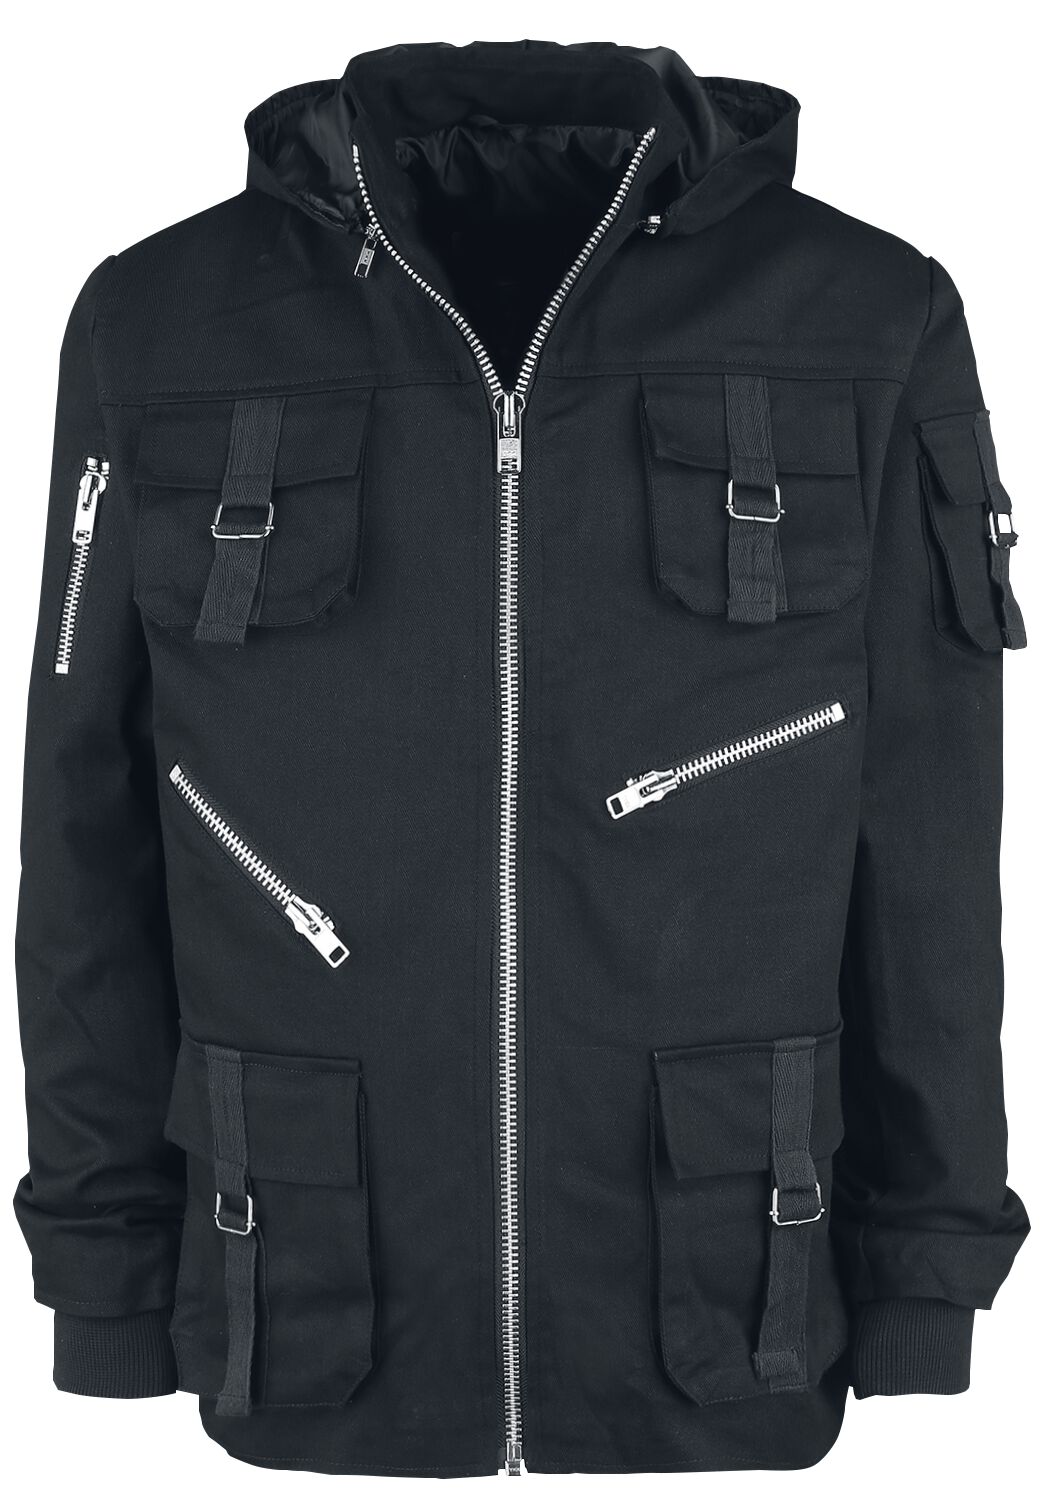 Altana Industries - Gothic Übergangsjacke - Military Jacket - S bis XXL - für Männer - Größe XXL - schwarz